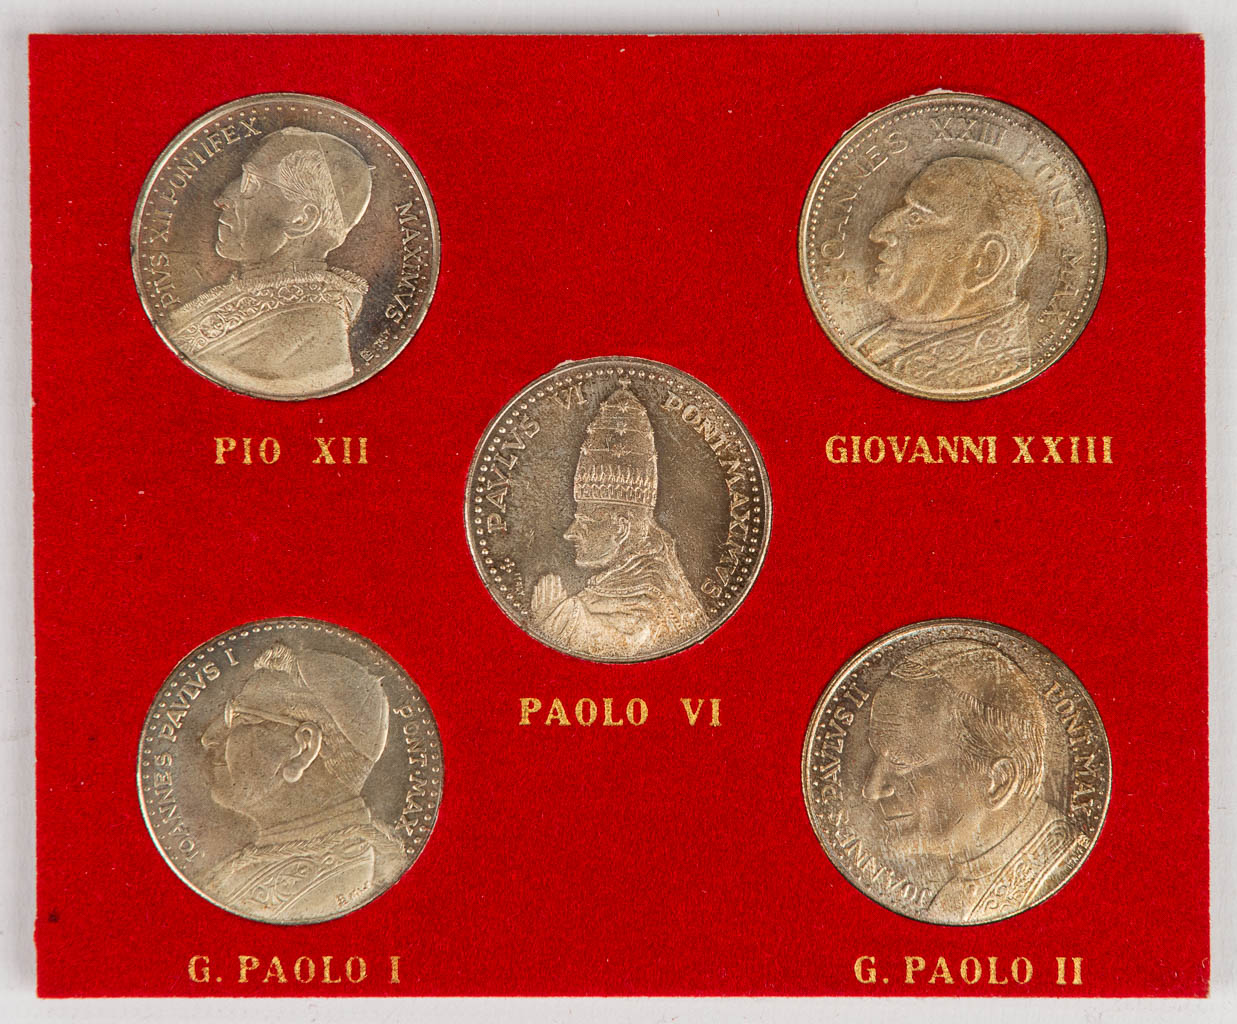 Een collectie van 5 penningen met Pauselijke afbeeldingen: Pio XII, Giovanni XXIII, G. Paolo II, G. Paolo I, Paolo VI. (H:11cm)